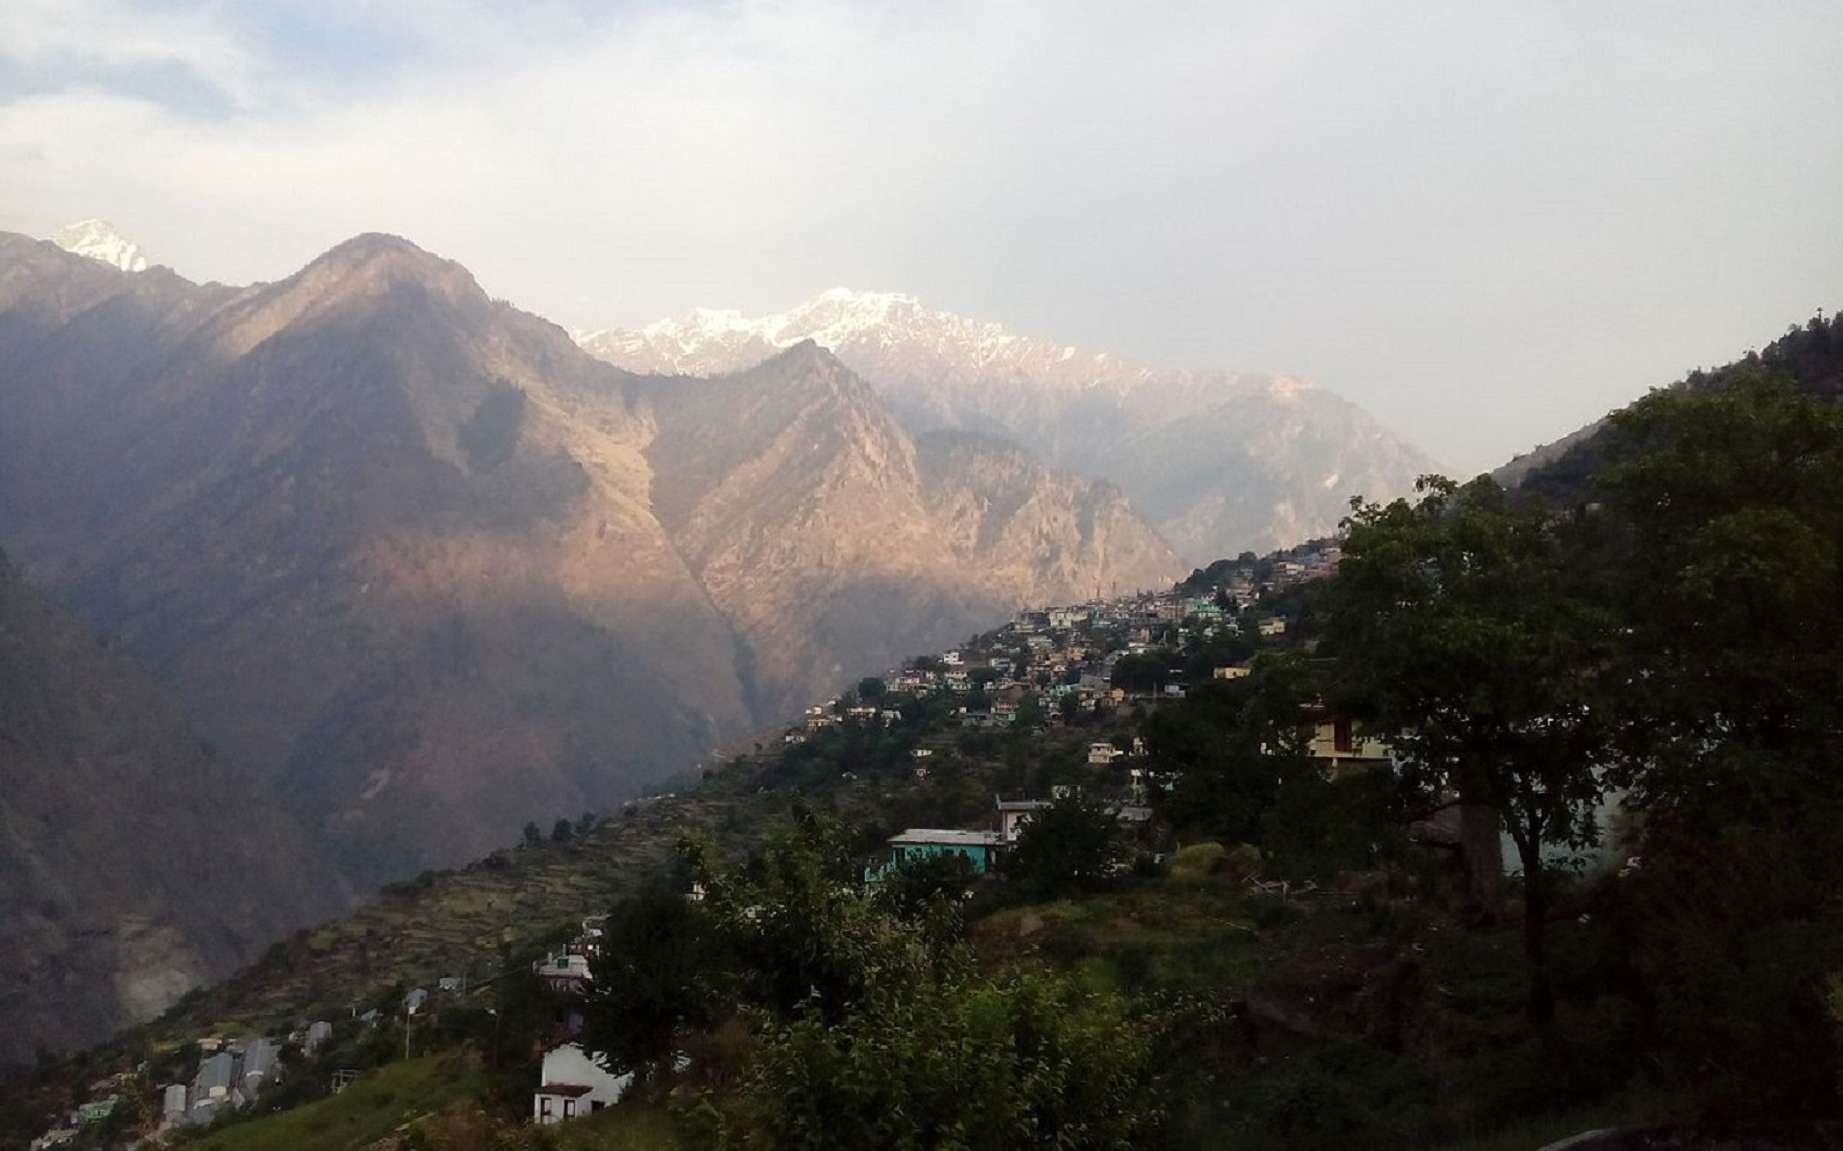 Des milliers de personnes sont menacées par des glissements de terrain dans l'Himalaya